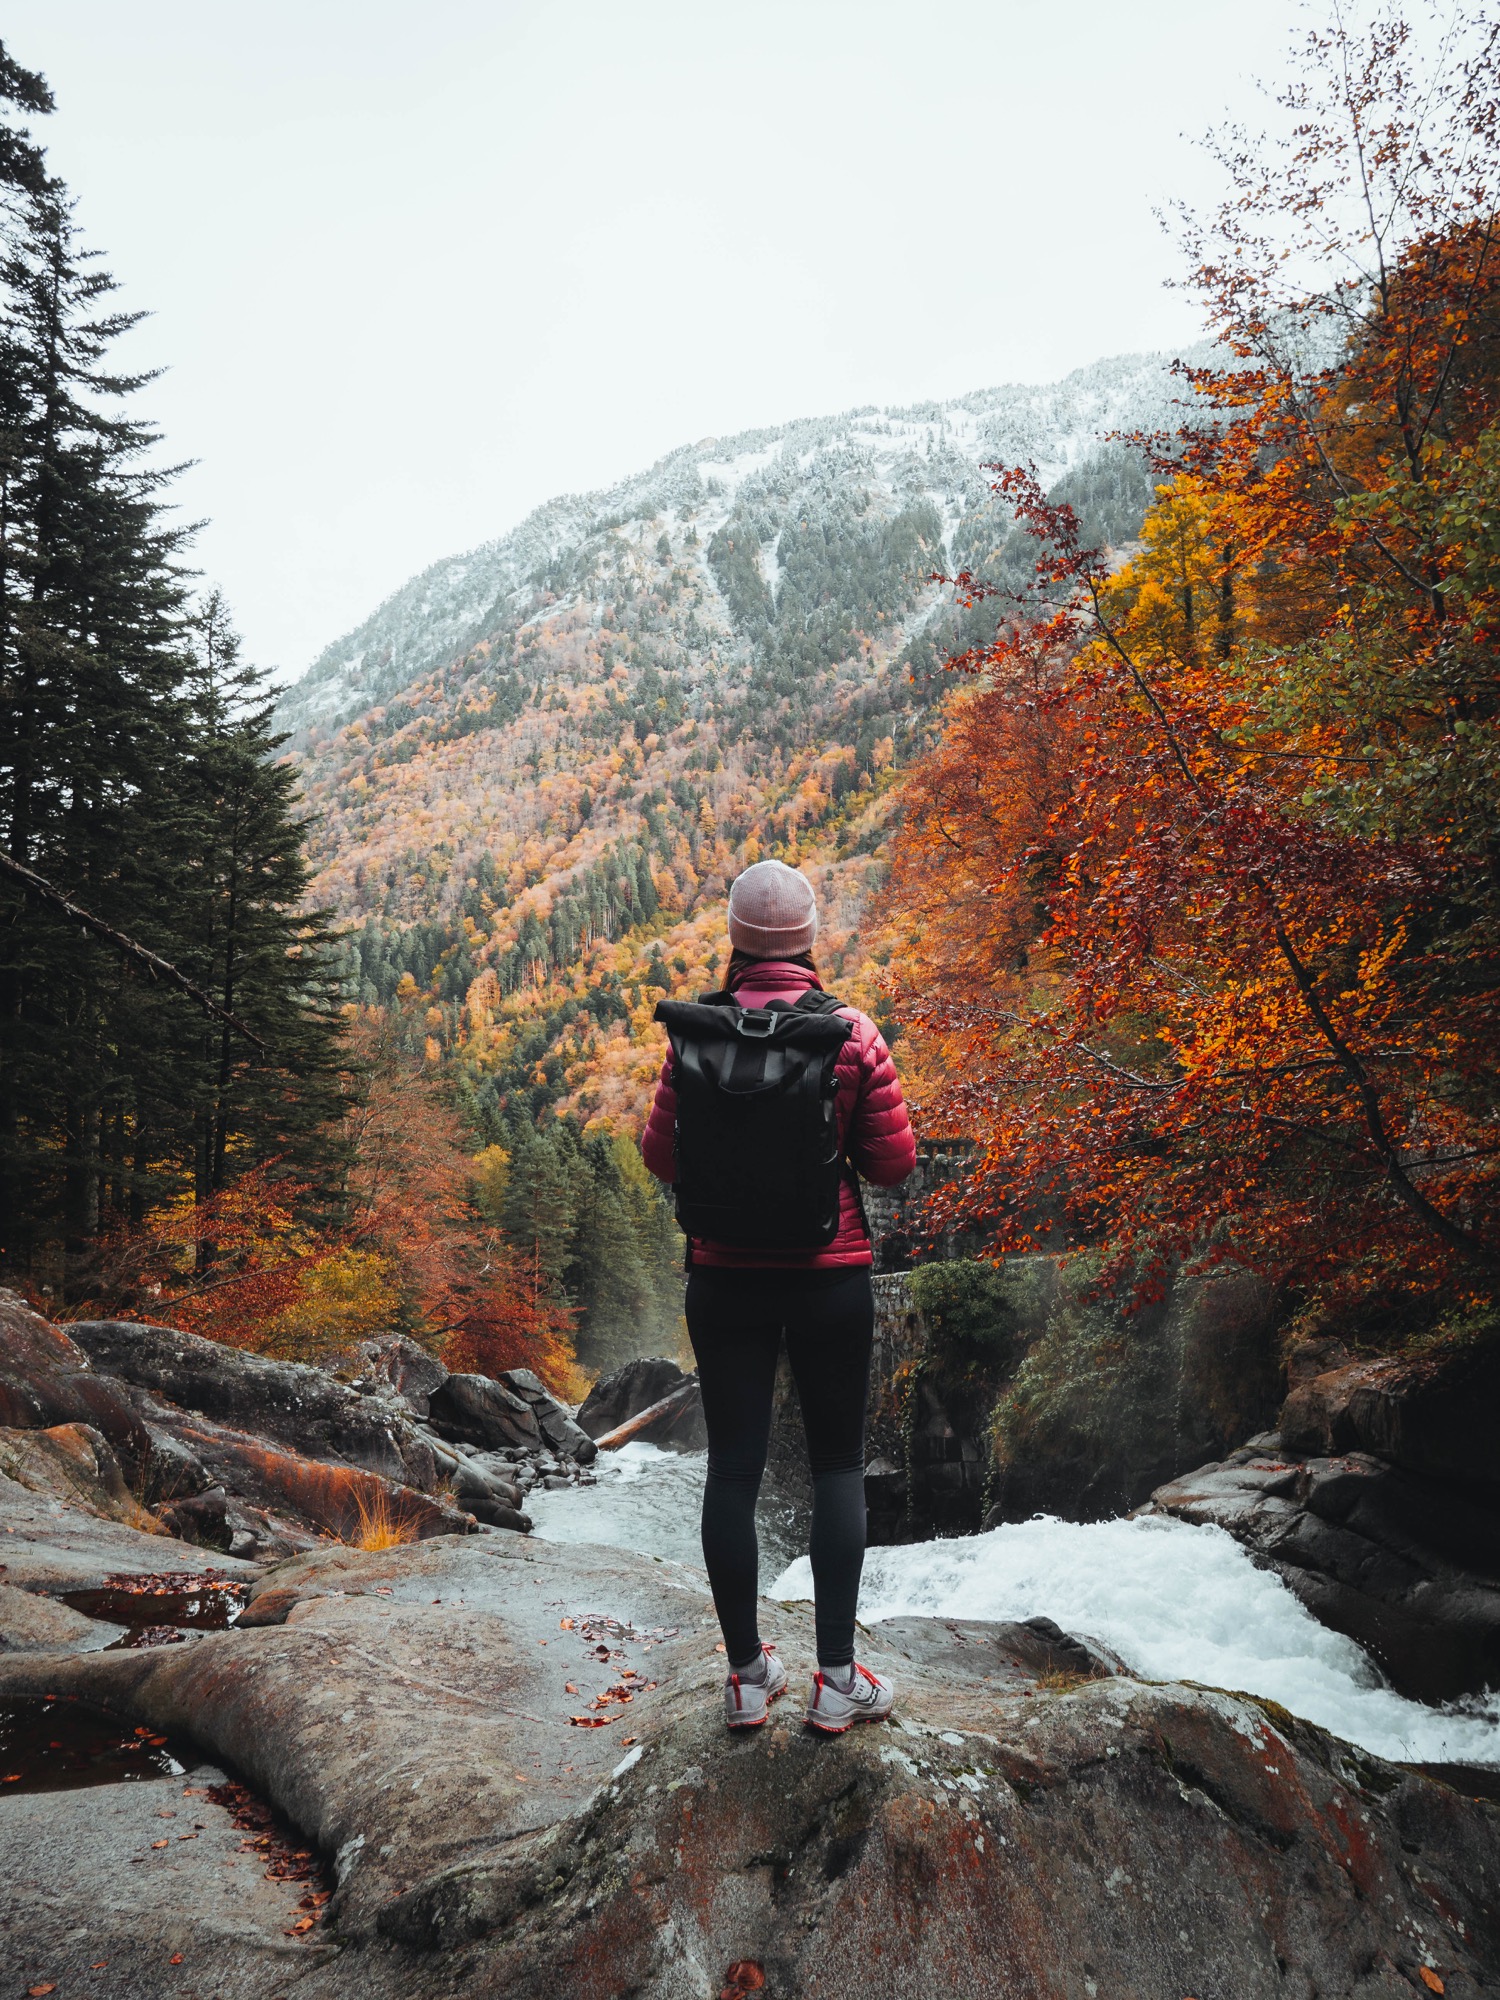 Randonnée sur le chemin des cascades en automne menant au lac de Gaube dans les Pyrénées